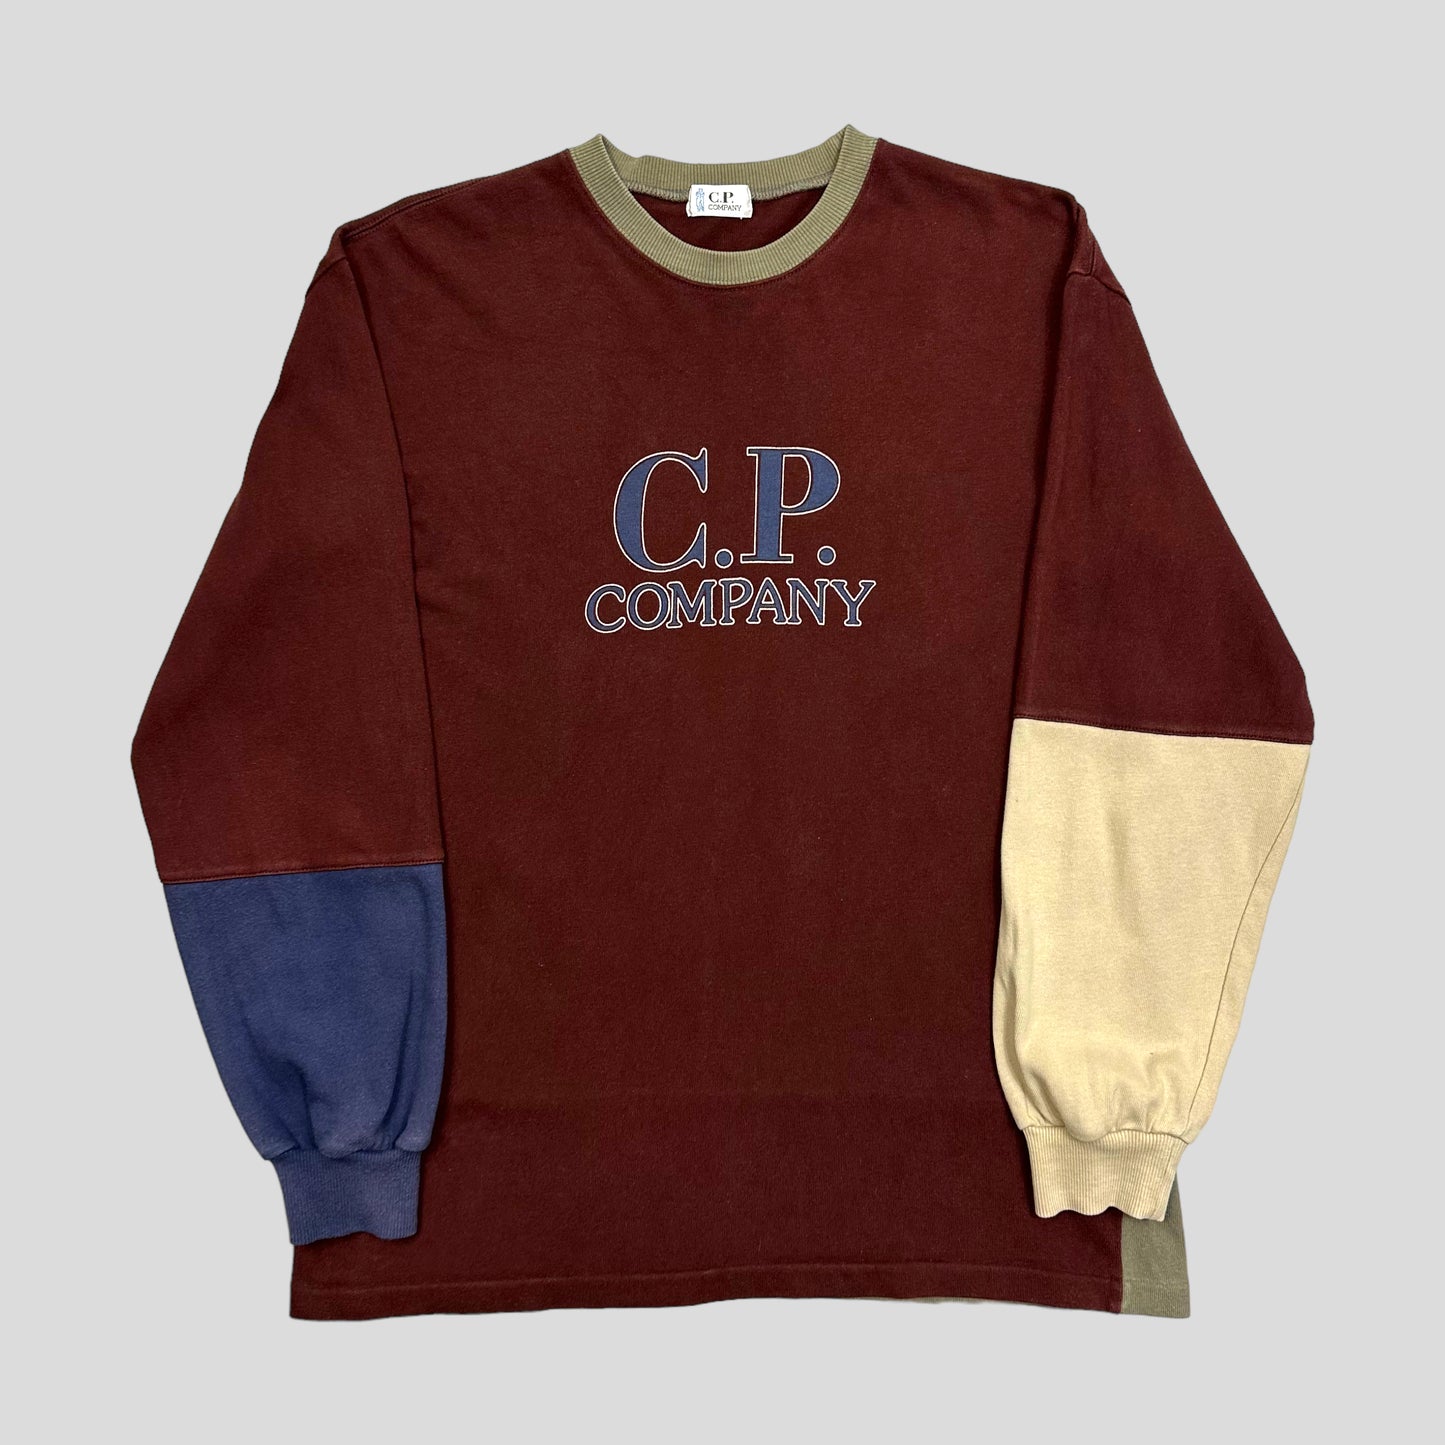 CP Company 90’s Colourblock Crewneck - M